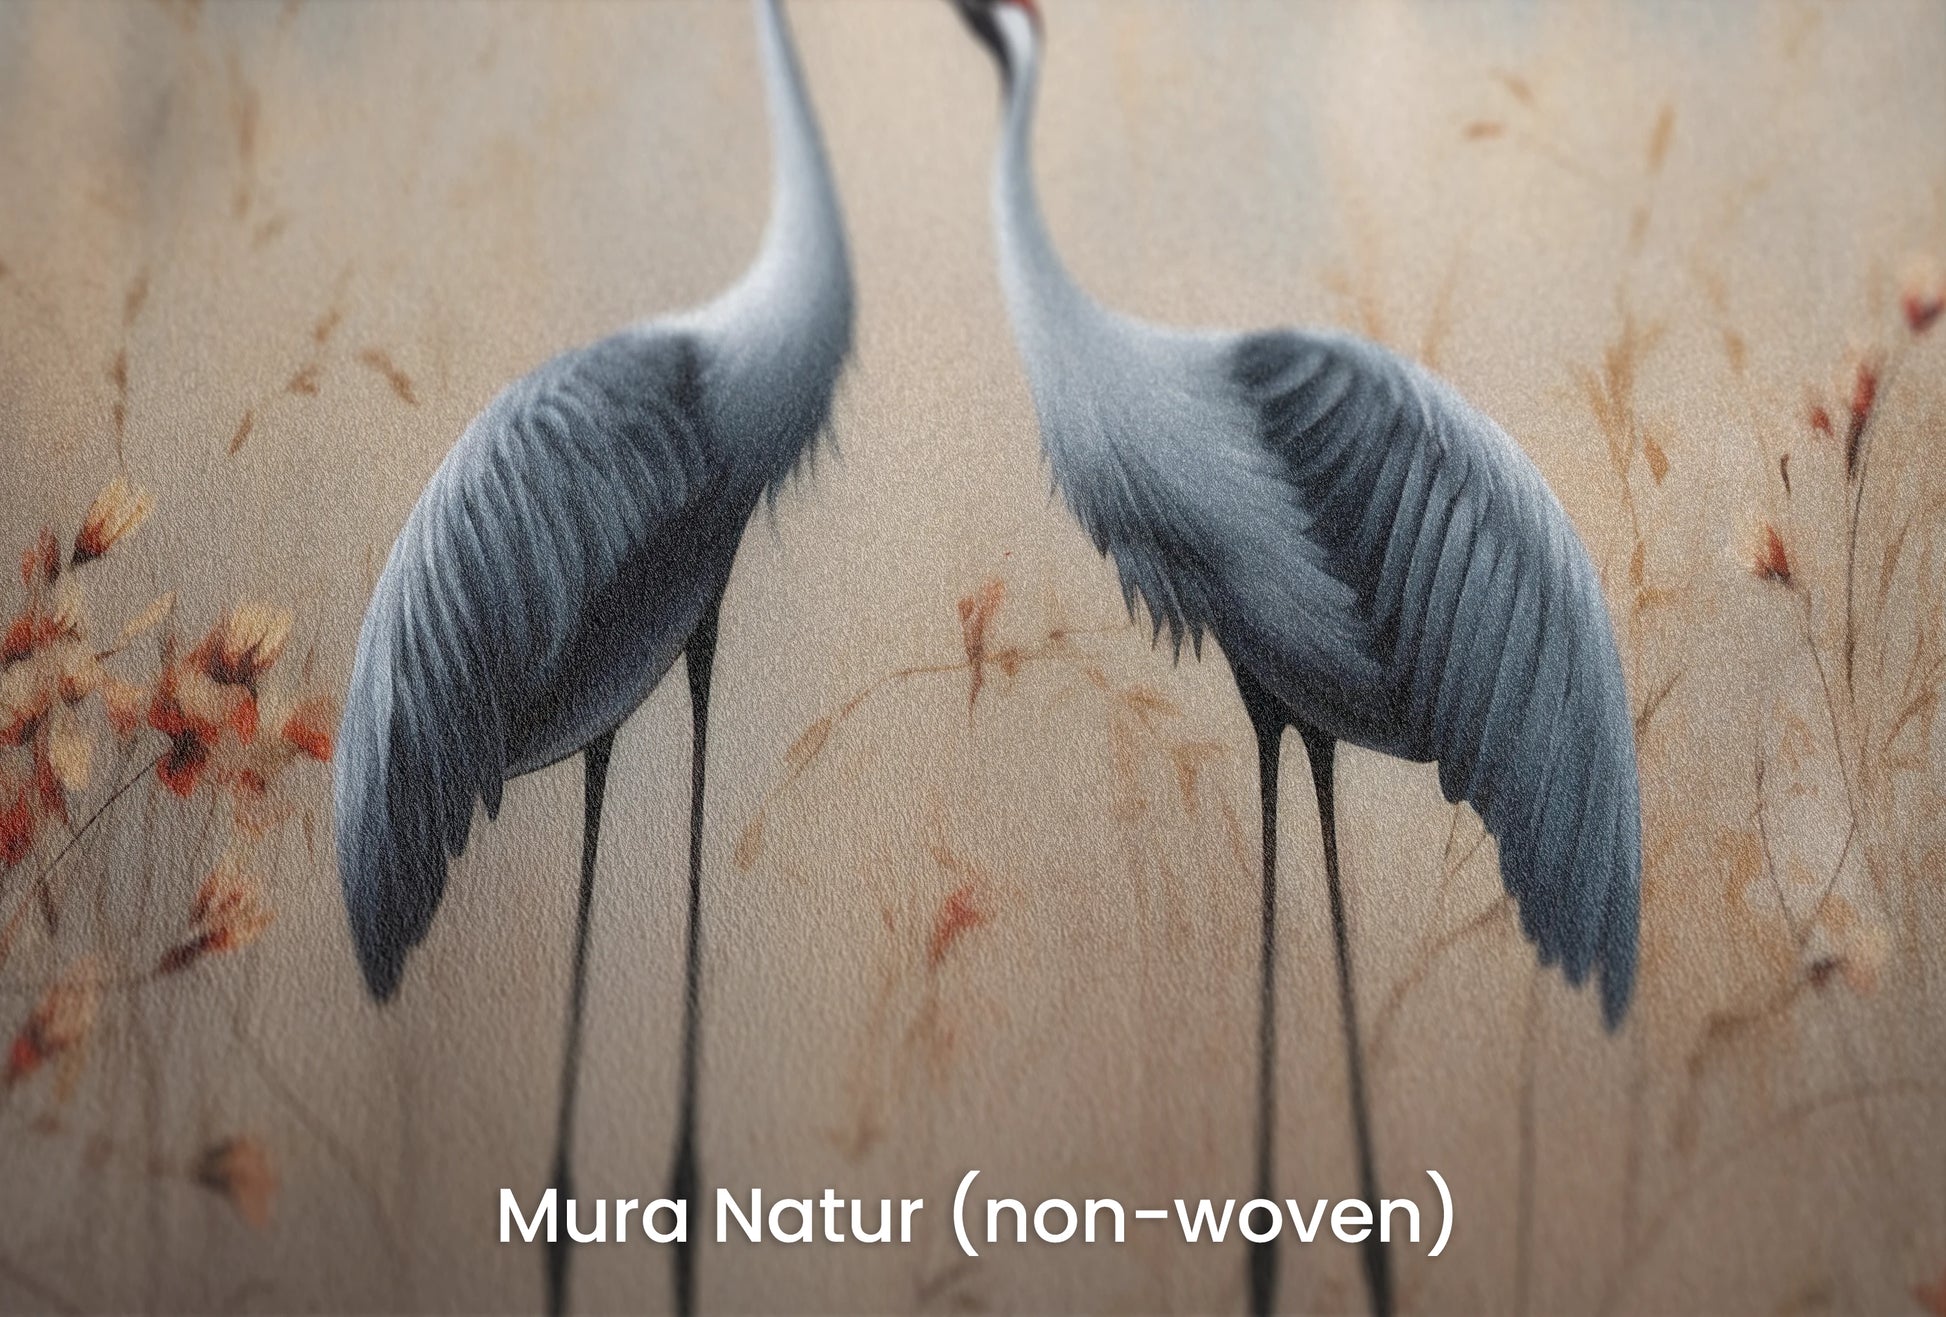 Zbliżenie na artystyczną fototapetę o nazwie Rustic Serenity na podłożu Mura Natur (non-woven) - naturalne i ekologiczne podłoże.